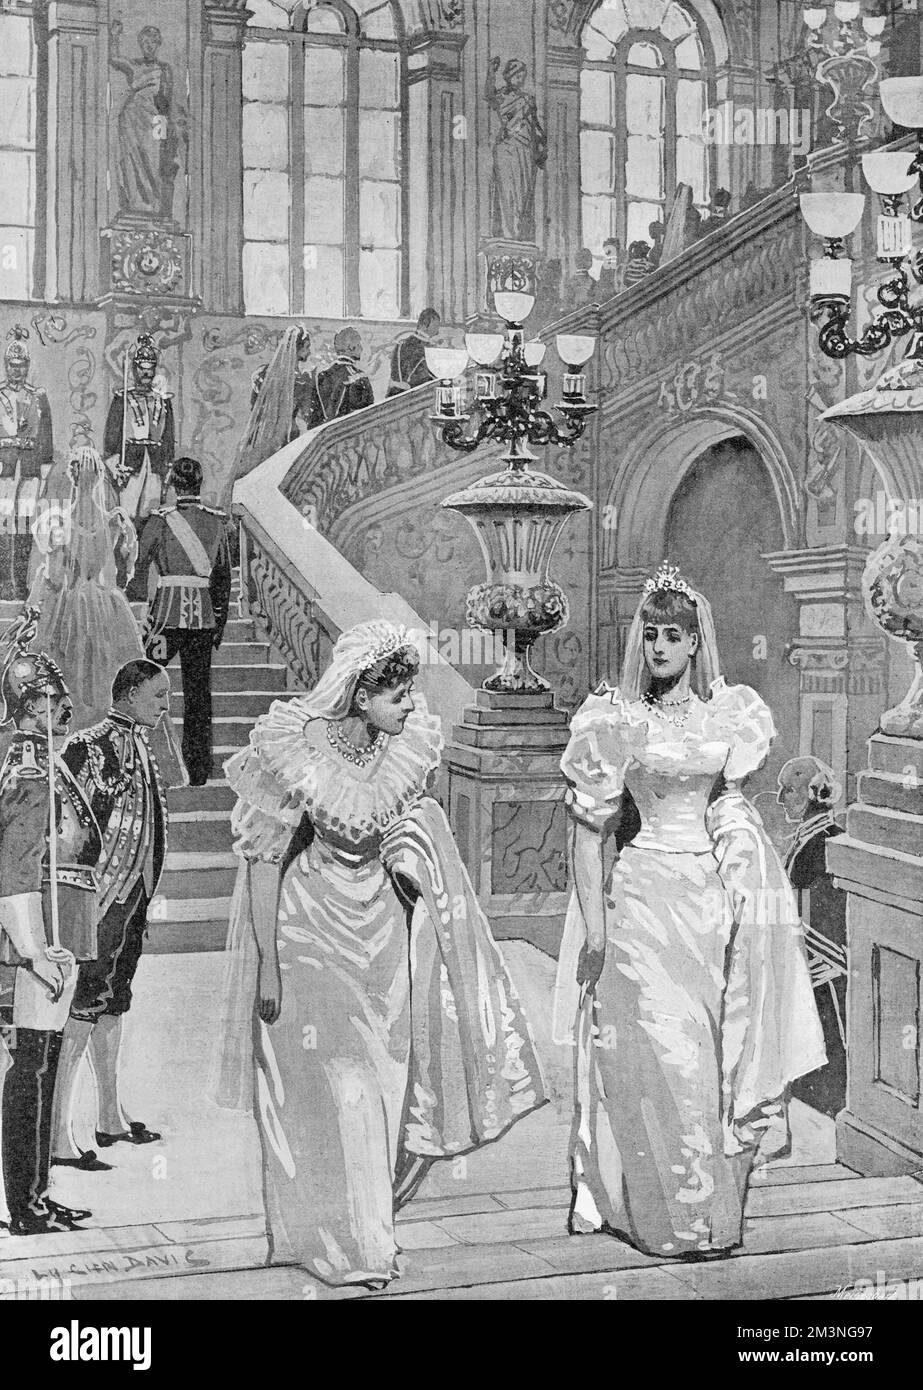 Vous passerez devant le grand escalier du Palais d'hiver sur le chemin du mariage de l'empereur Nicolas II à la Grande duchesse Alexandra Feodorovna, princesse Alix de Hesse. Date : 26th novembre 1894 Banque D'Images